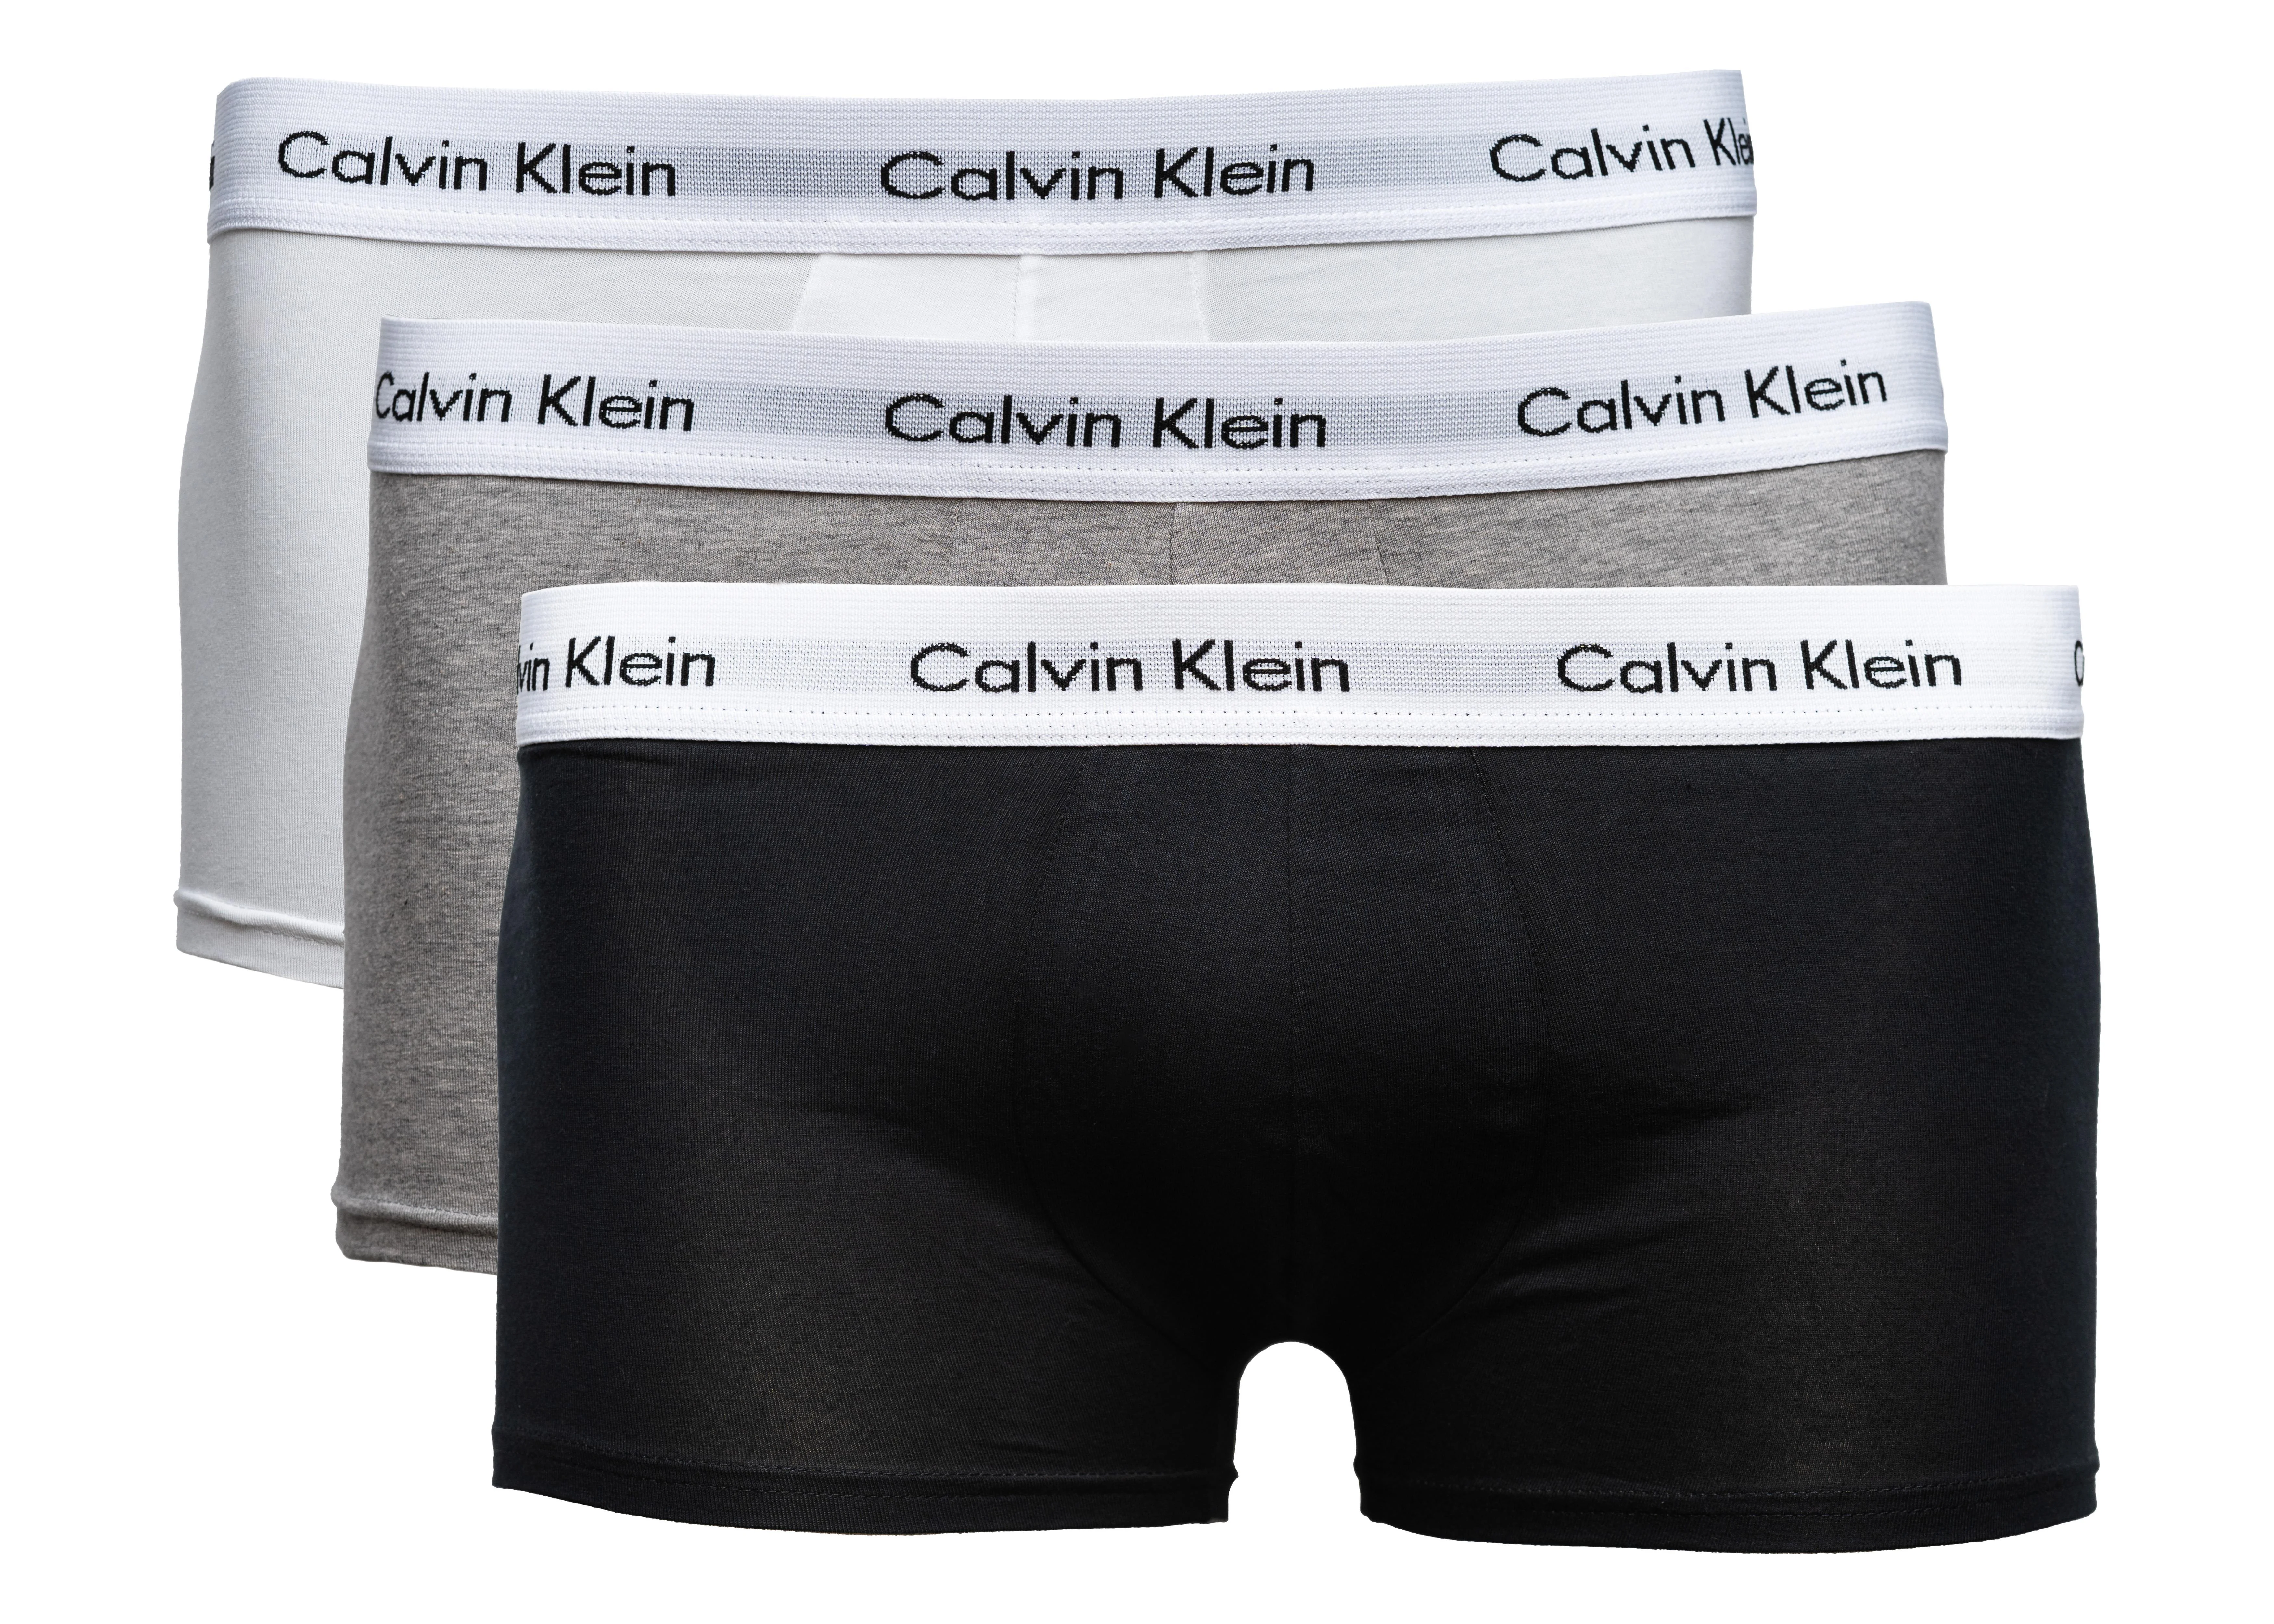 CALVIN KLEIN Boxershorts 3er-Pack  schwarz/weiß/grau, Größe L